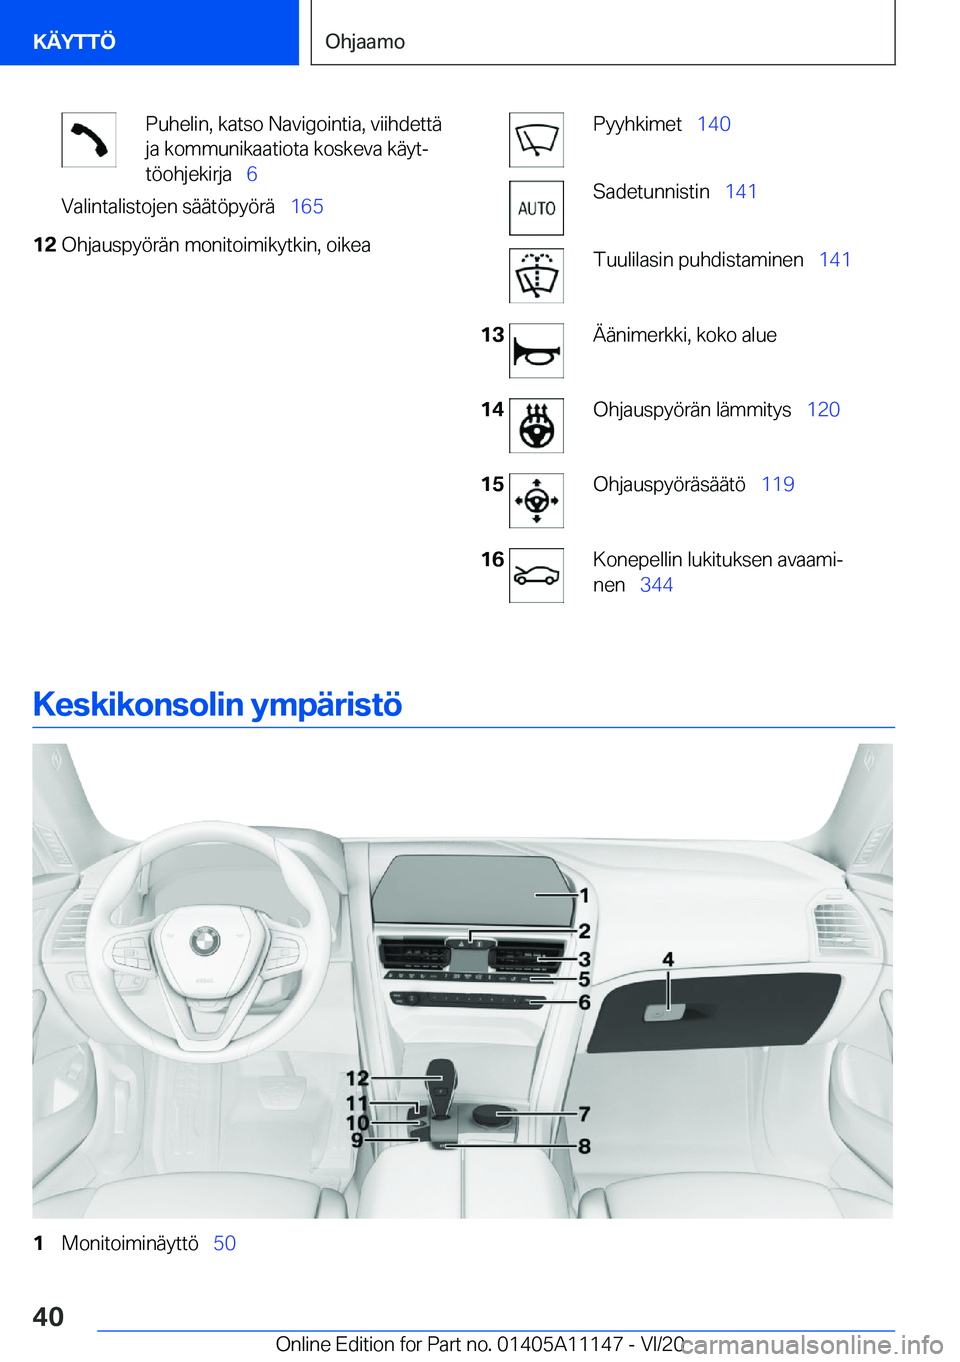 BMW 8 SERIES COUPE 2021  Omistajan Käsikirja (in Finnish) �P�u�h�e�l�i�n�,��k�a�t�s�o��N�a�v�i�g�o�i�n�t�i�a�,��v�i�i�h�d�e�t�t�